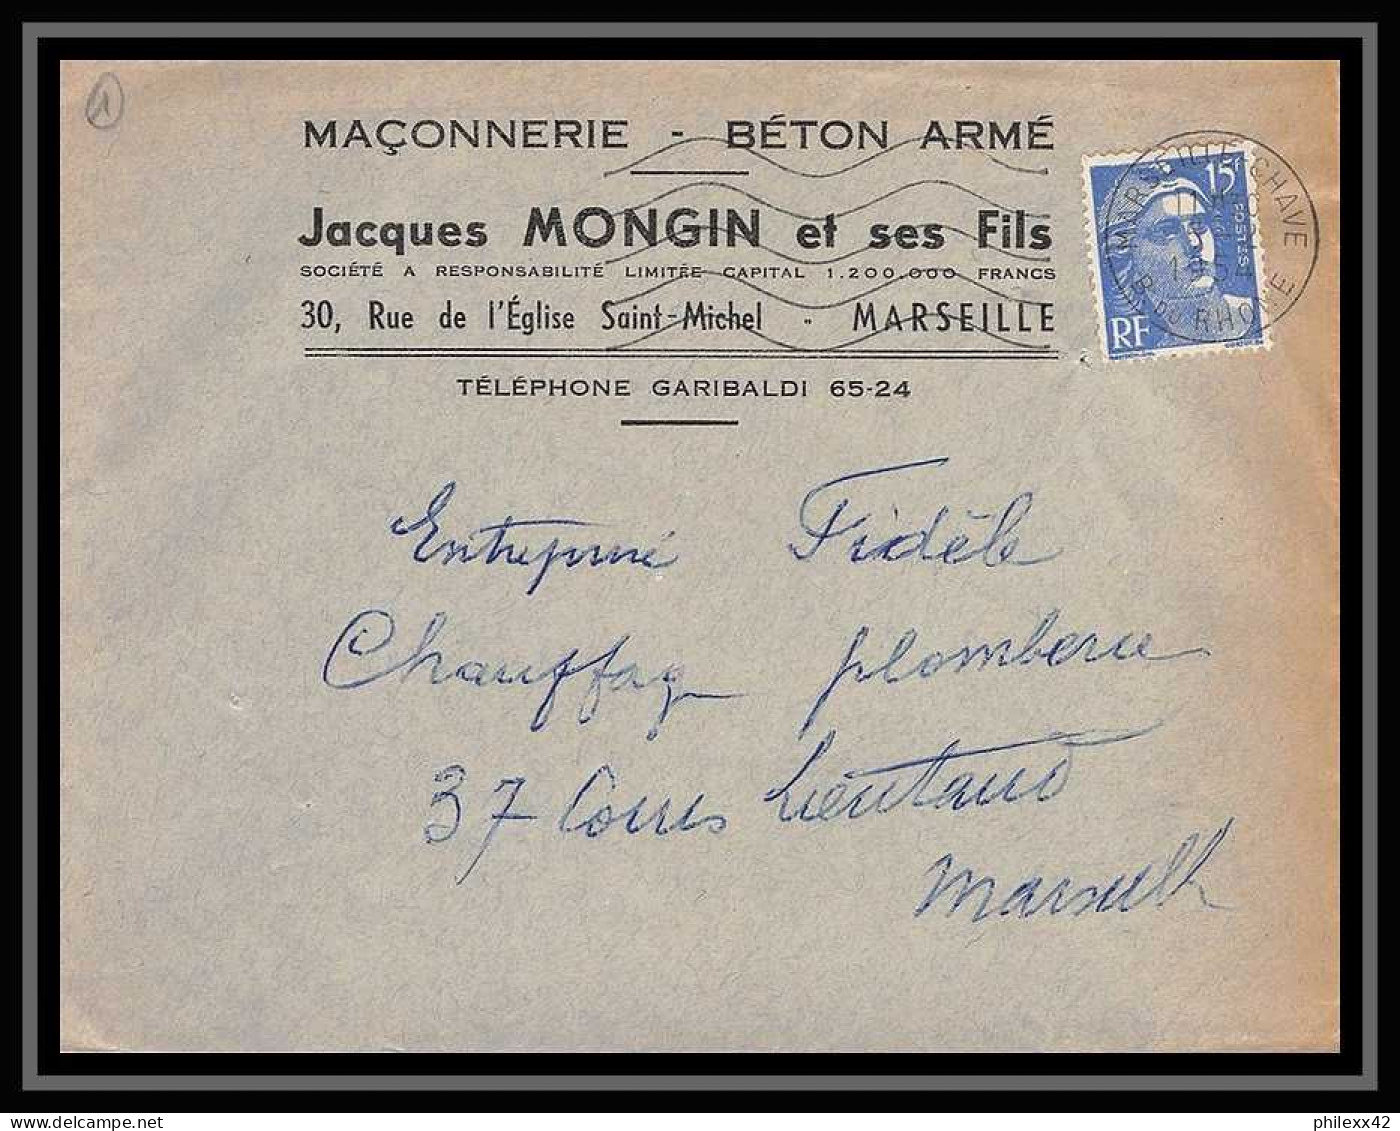 109882 lot de 15 lettres + divers Bouches du rhone Marseille Chèques postaux